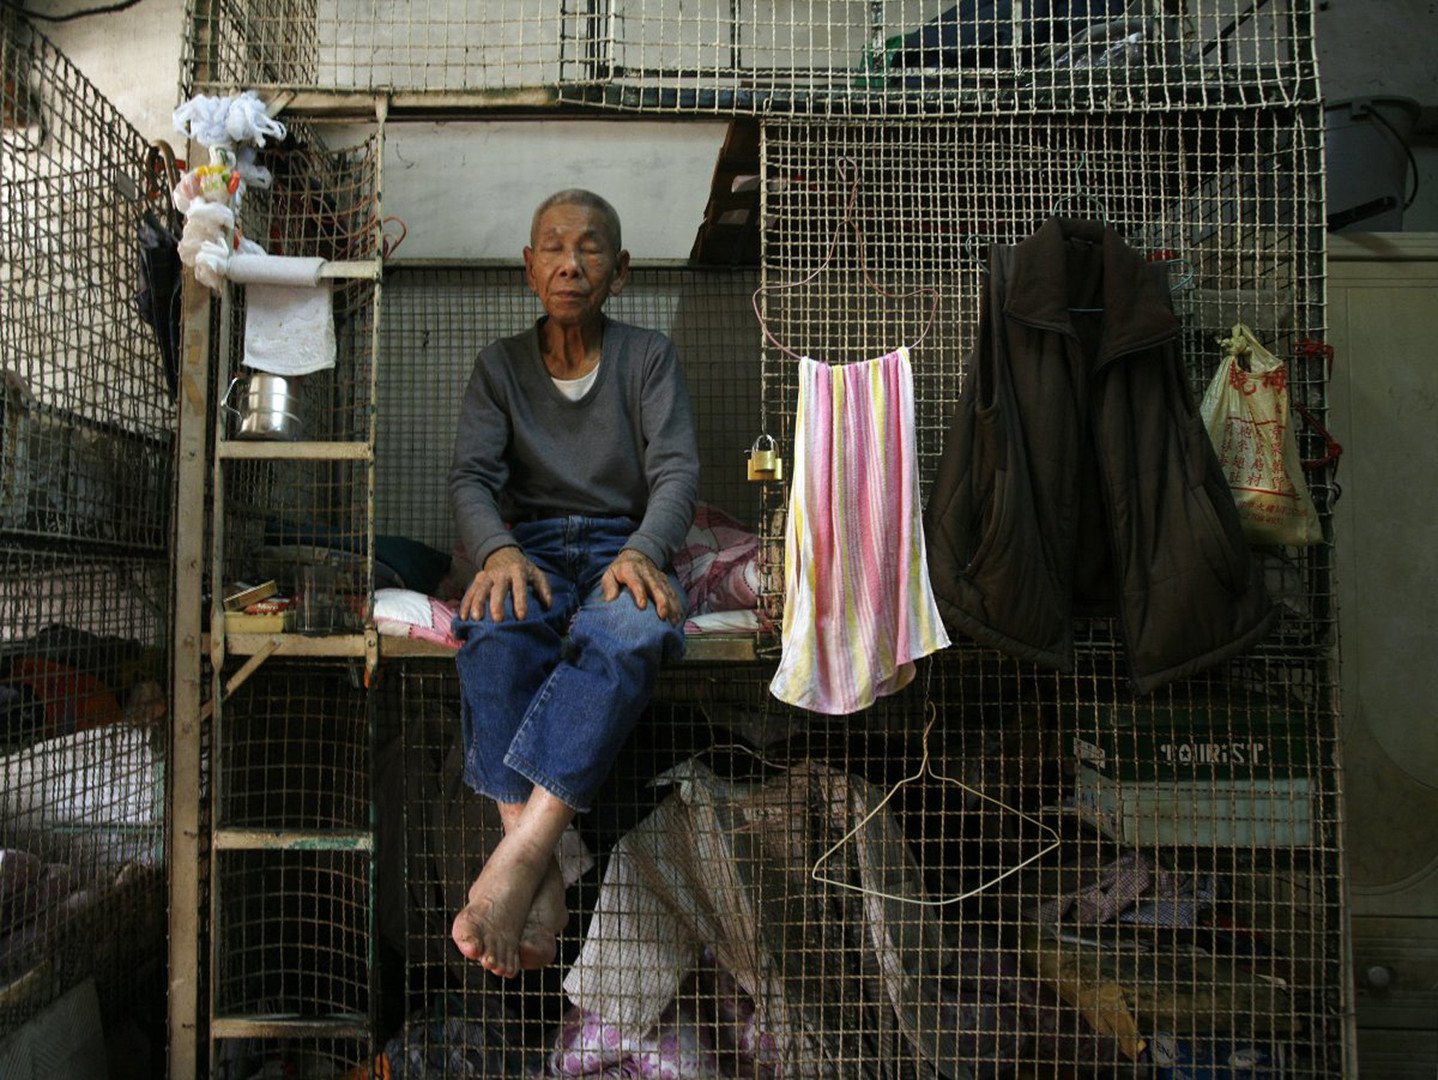 مئات من كبار السن يعيشون في أقفاص في قاعة تتضمن 12 قفصا، هونغ كونغ